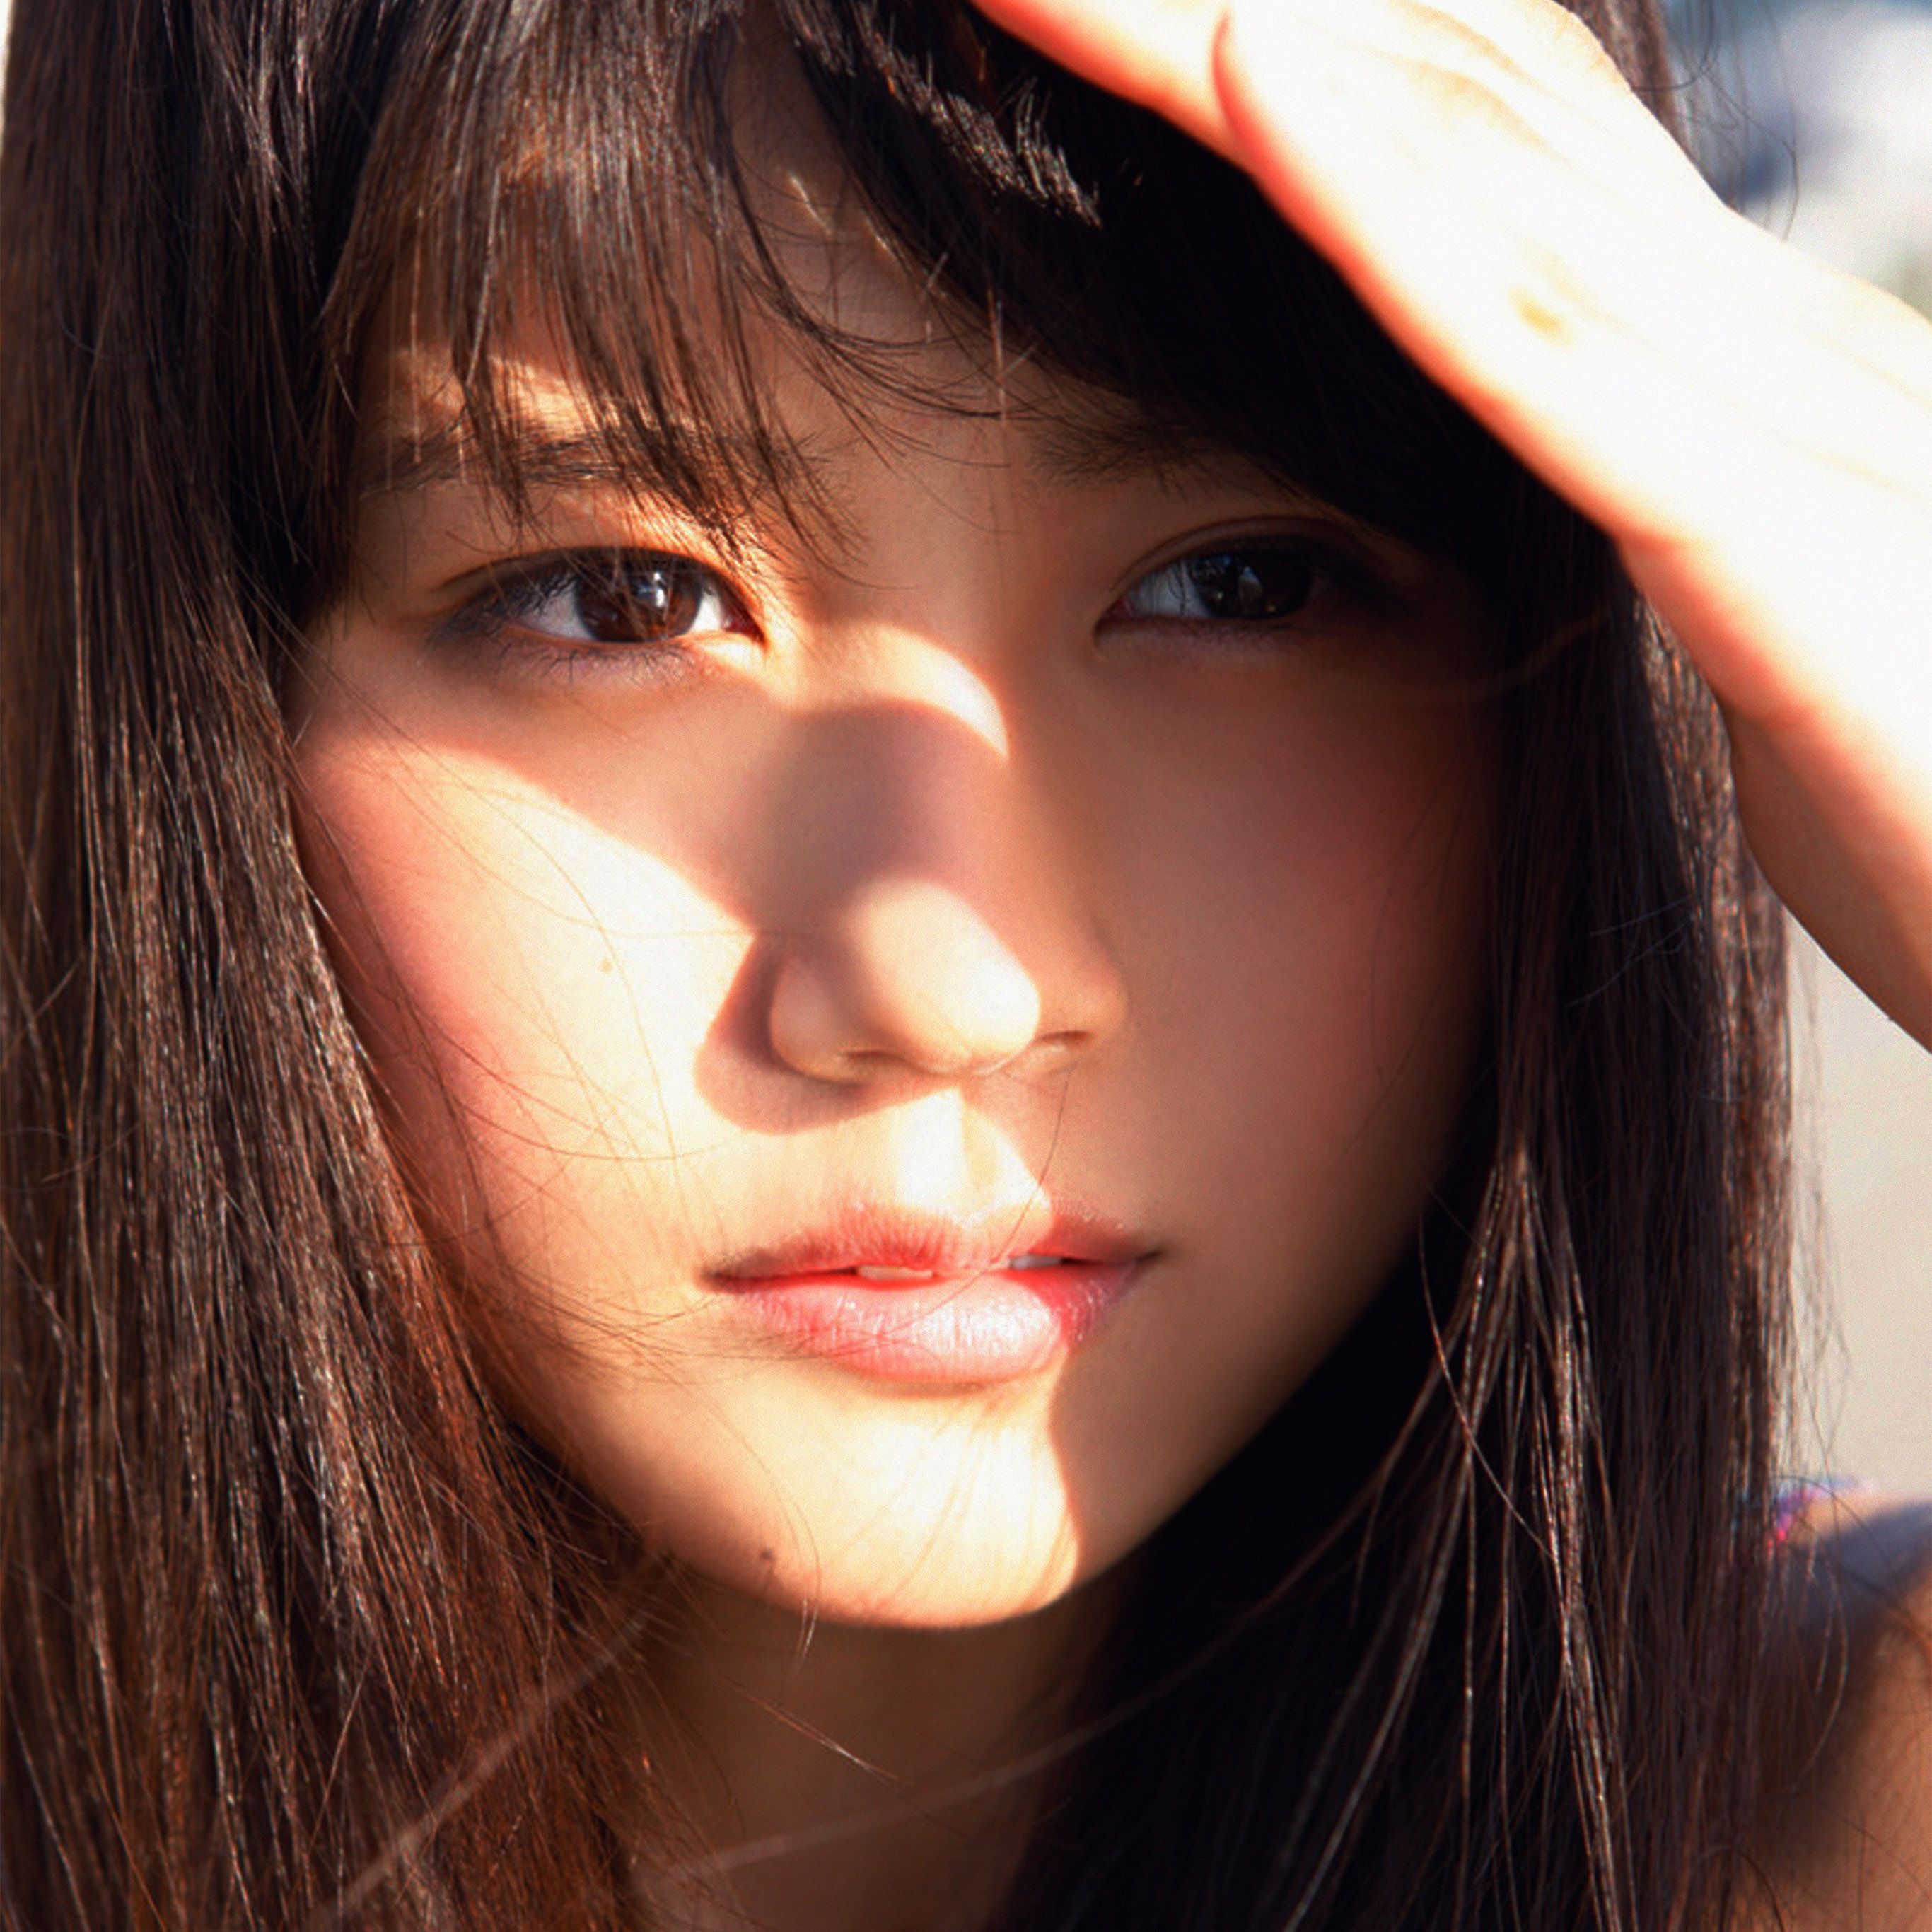 Arimura Kasumi Cute Japan Girl Face Summer Wallpaper